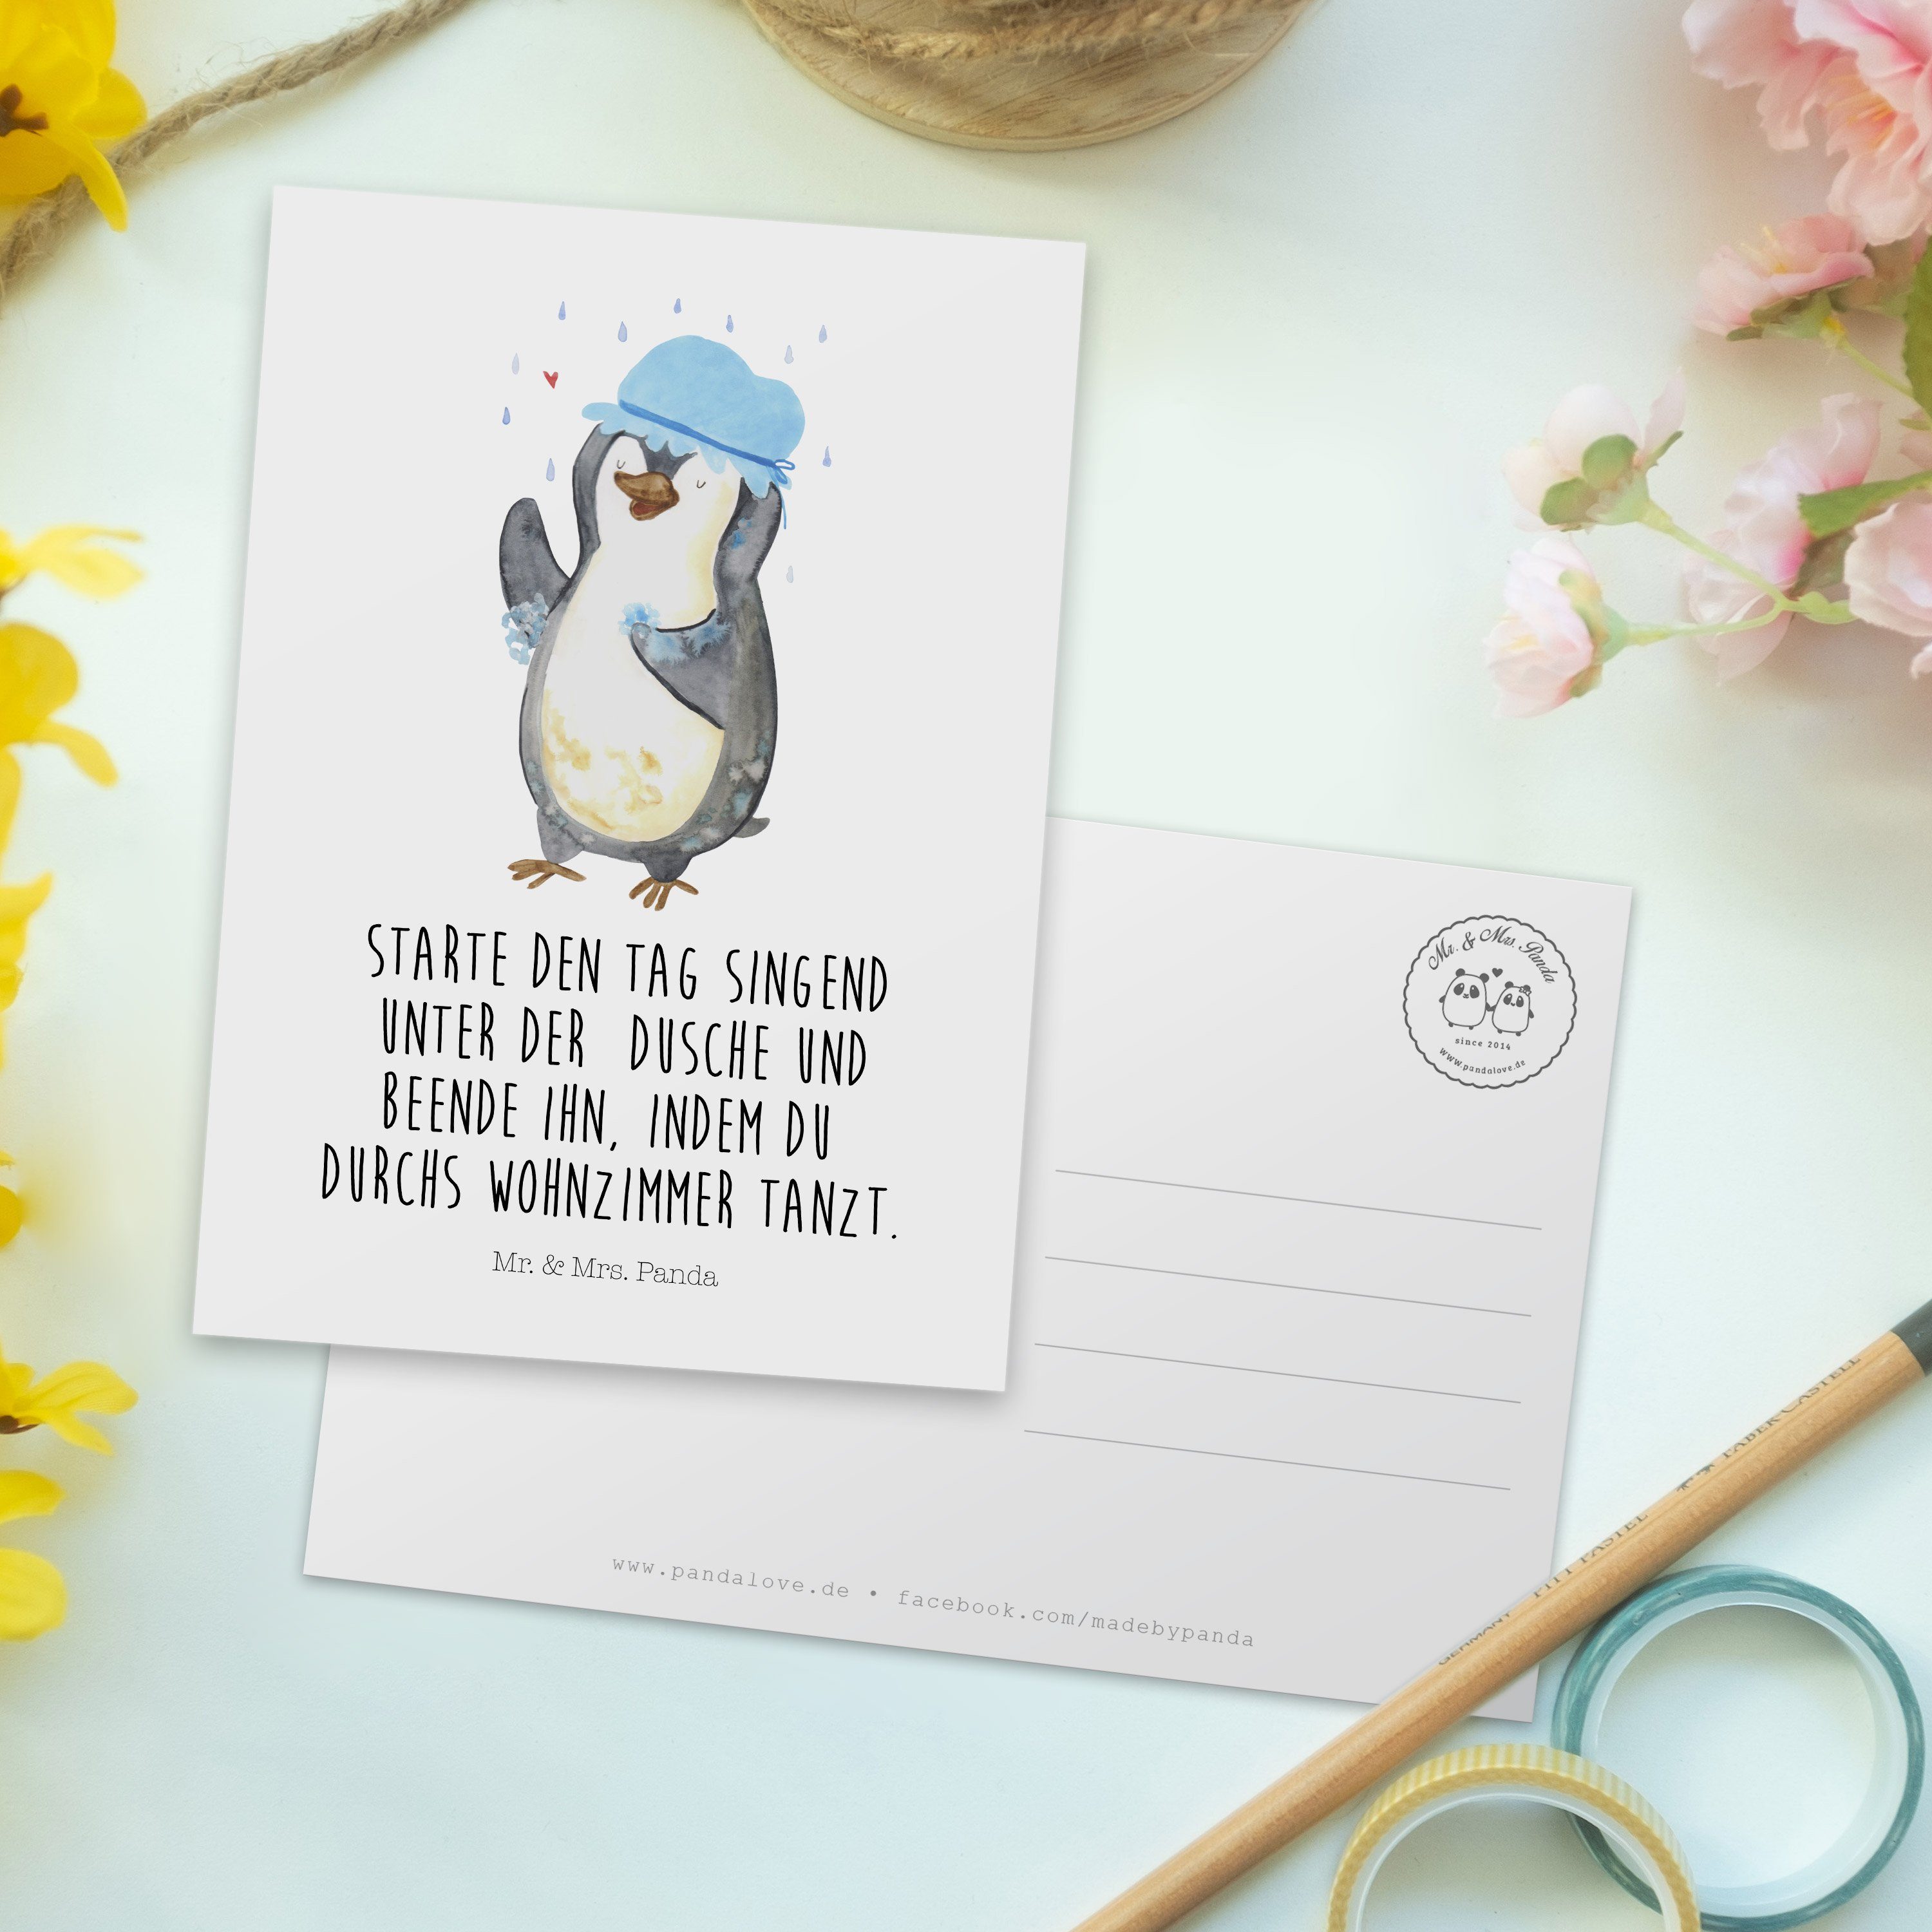 Mr. & Mrs. Panda Weiß Geschenk, Pinguin G - Motivation, duscht - Lebensmotto, Postkarte duschen